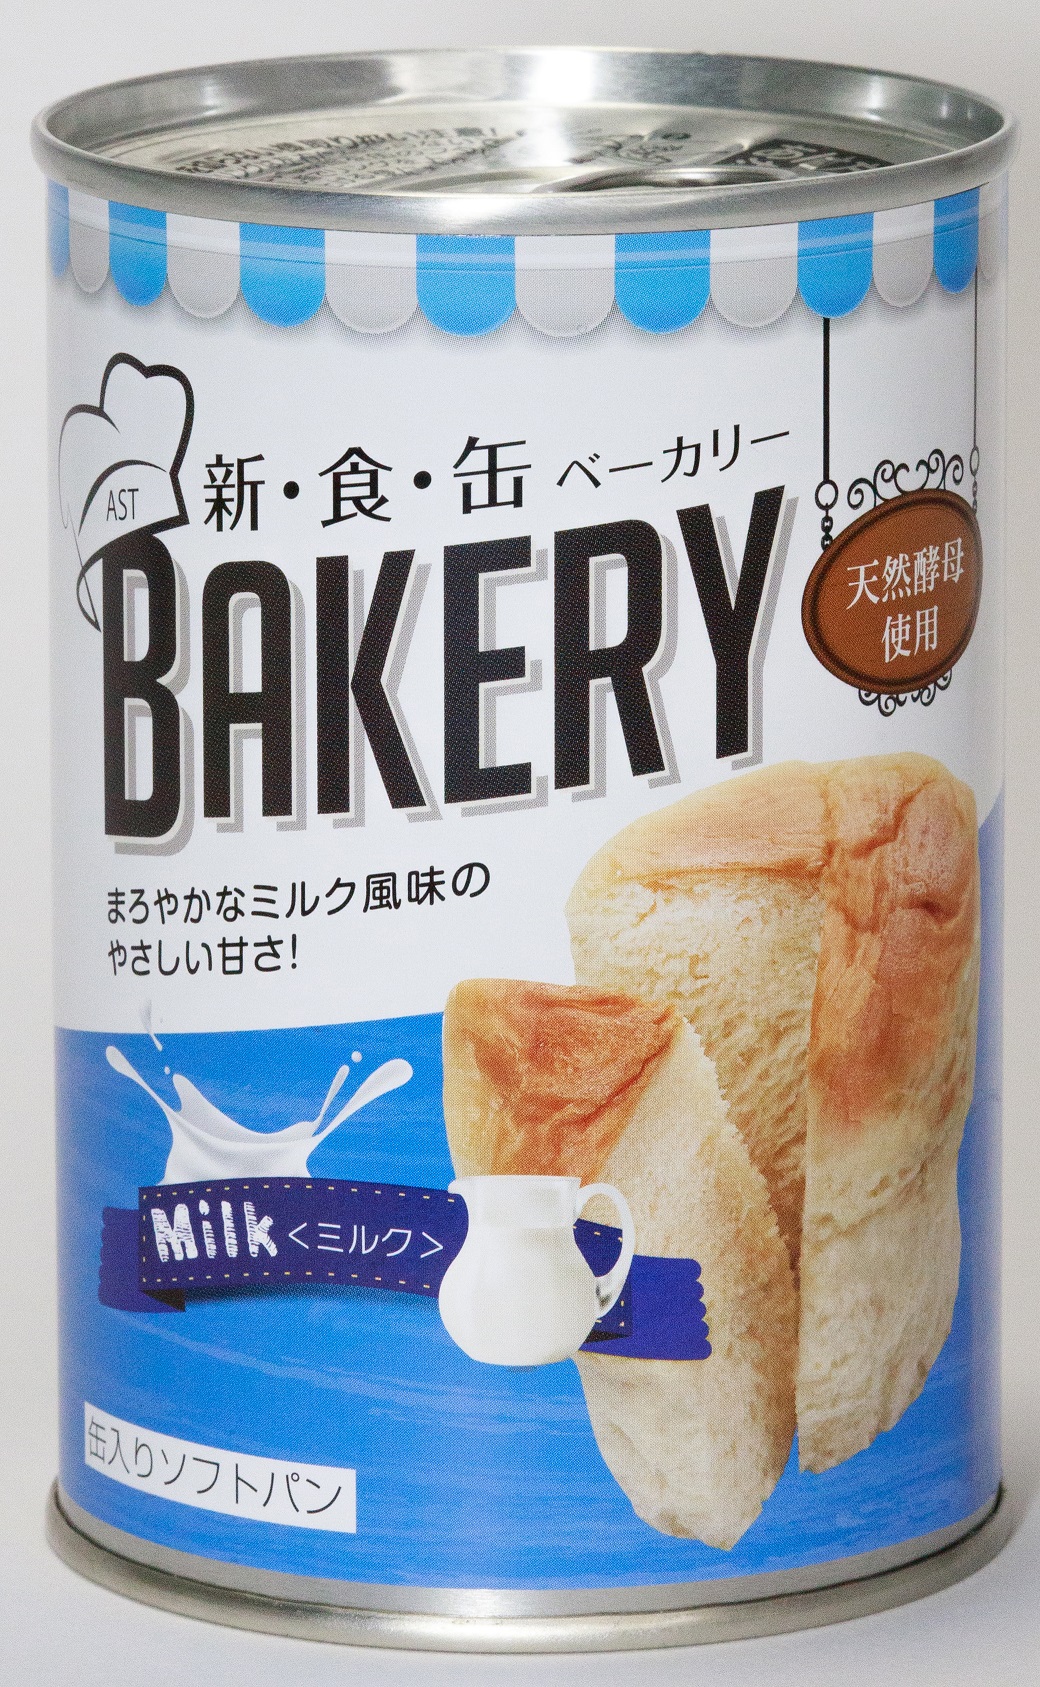 おすすめネット アスト 新食缶ベーカリー ミルク 100g 天然酵母使用 備蓄 防災用 長期保存可能パン